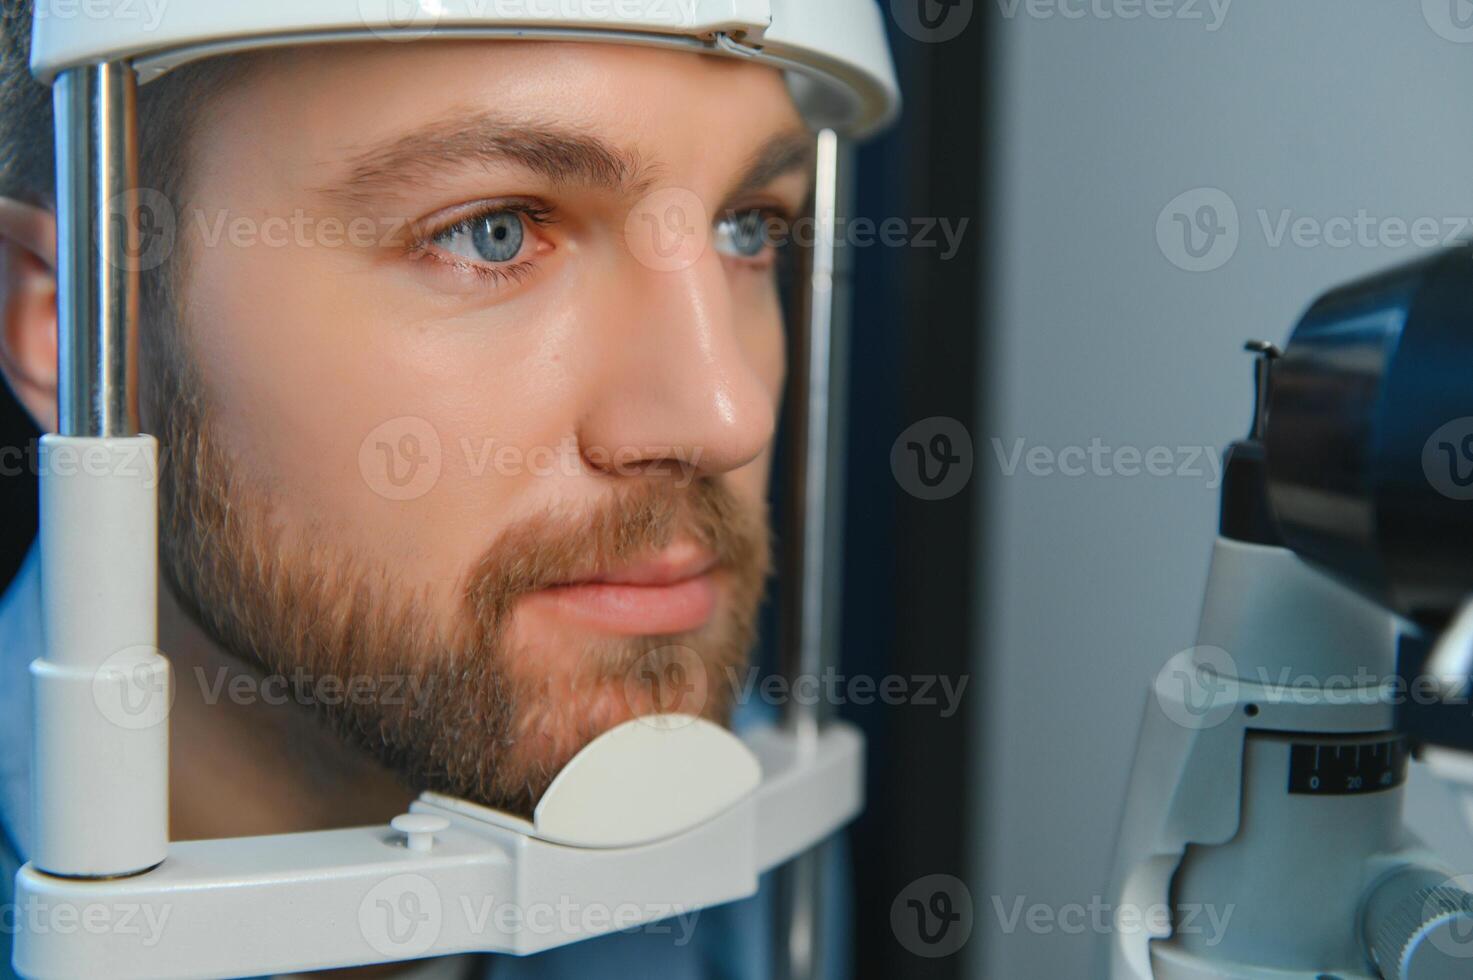 adulte homme vue tester avec binoculaire lampe à fente. vérification rétine de une Masculin œil fermer. ophtalmologie clinique photo